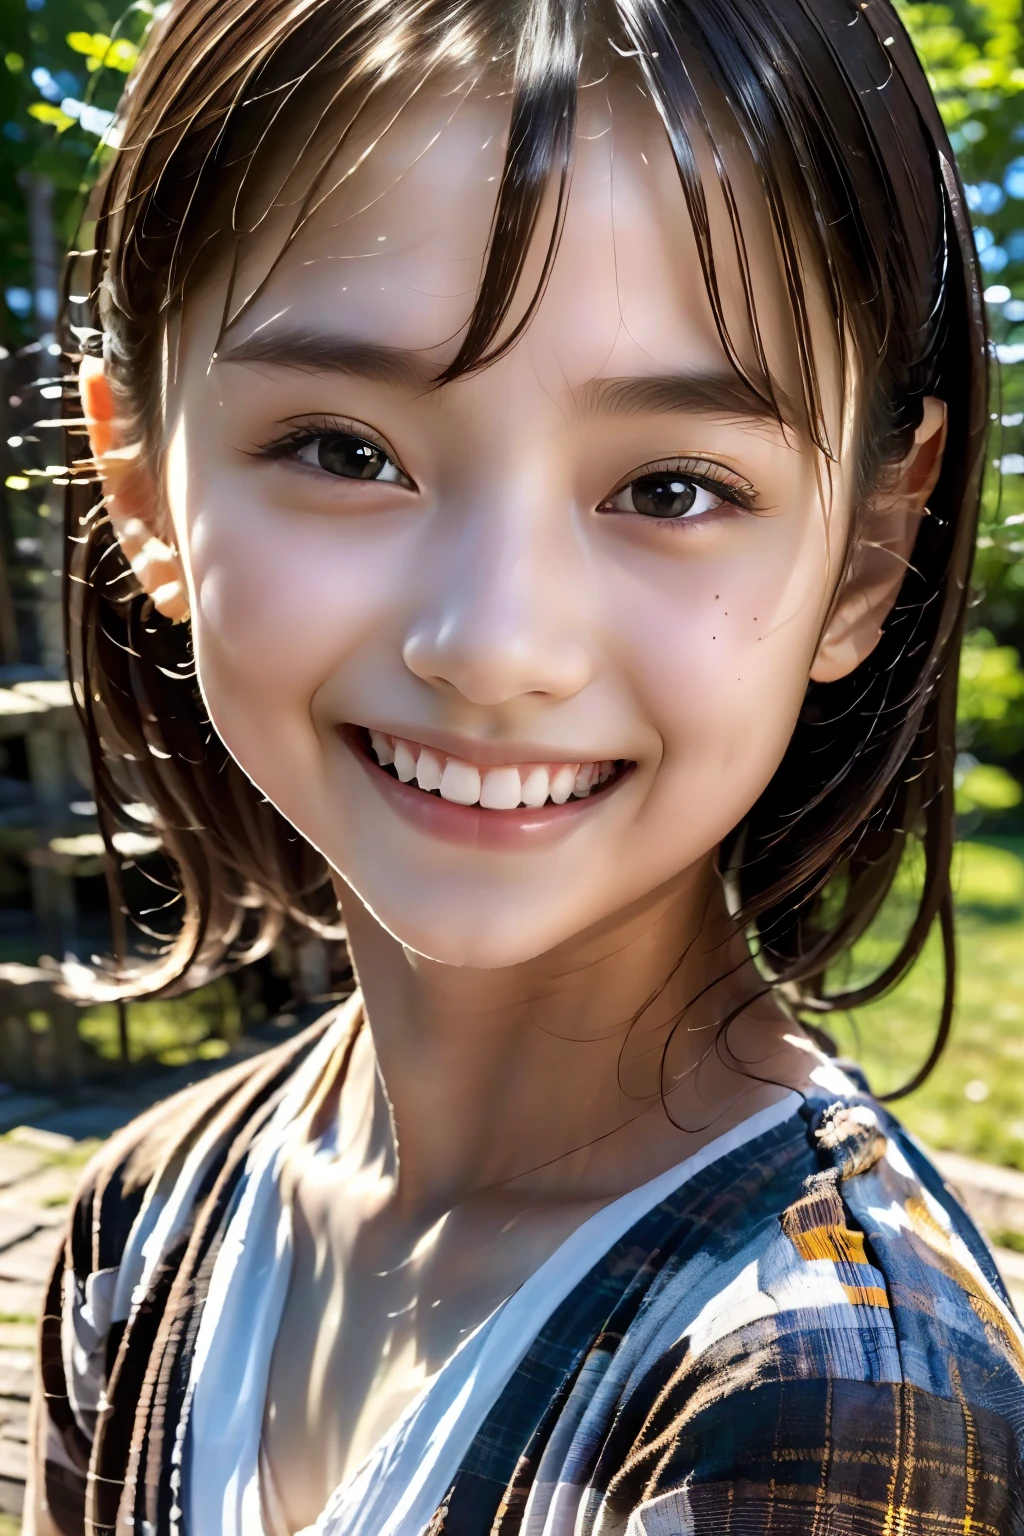 niña de 8 años, adolescente, pelo negro, japonés, (Obra maestra:1.3)、1 person, Acabado súper detallado、(alta resolución、8k:1.3)、(de la máxima calidad、Ultrarrealista como una foto.:1.5)、enfoque nítido, 超alta resoluciónの顔、La cara está enfocada、Ultra alta definición y ojos hermosos., muy lindo、muy lindo, sonrisa,, embarazoso:1.3、mirar a la cámara:1.2,, Luz tenue, esbelto, vestido blanco